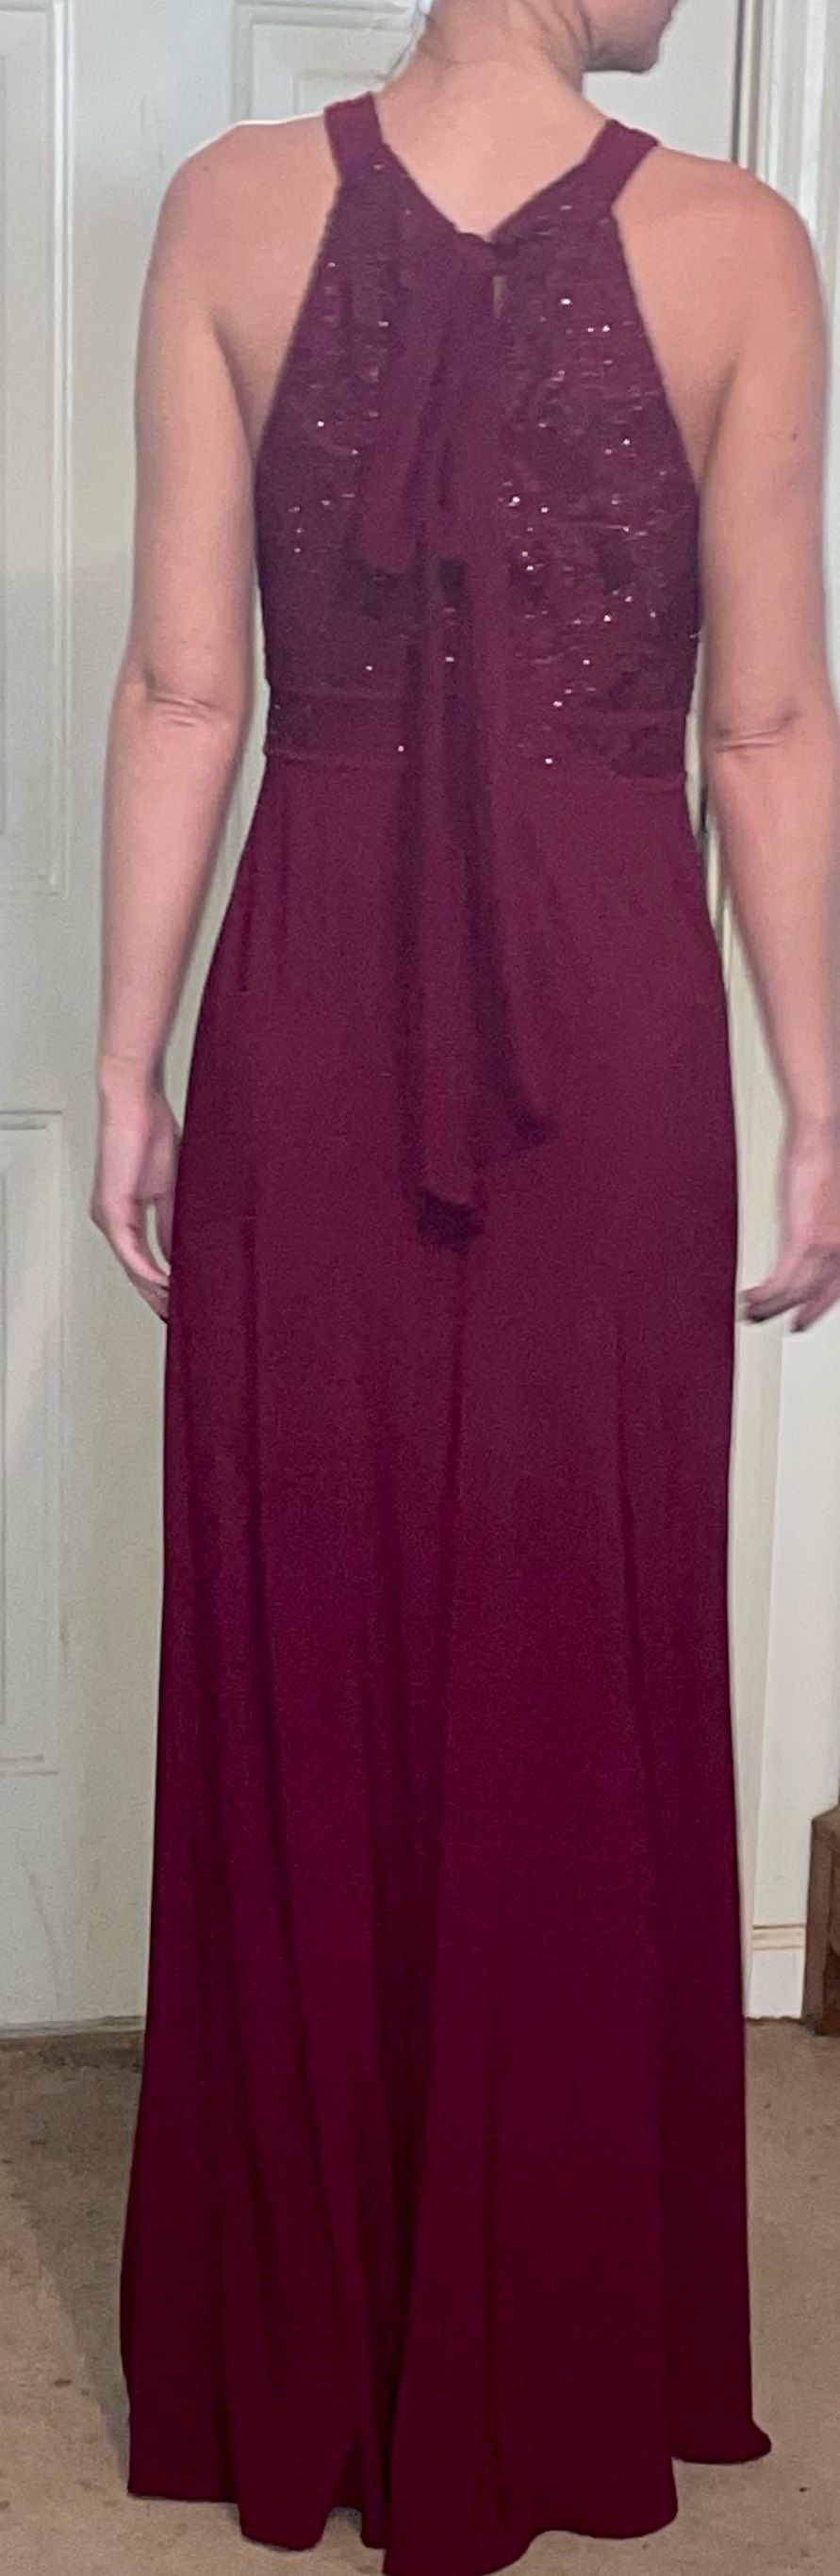 Size 4 Halter Burgundy Red Side Slit Dress on Queenly